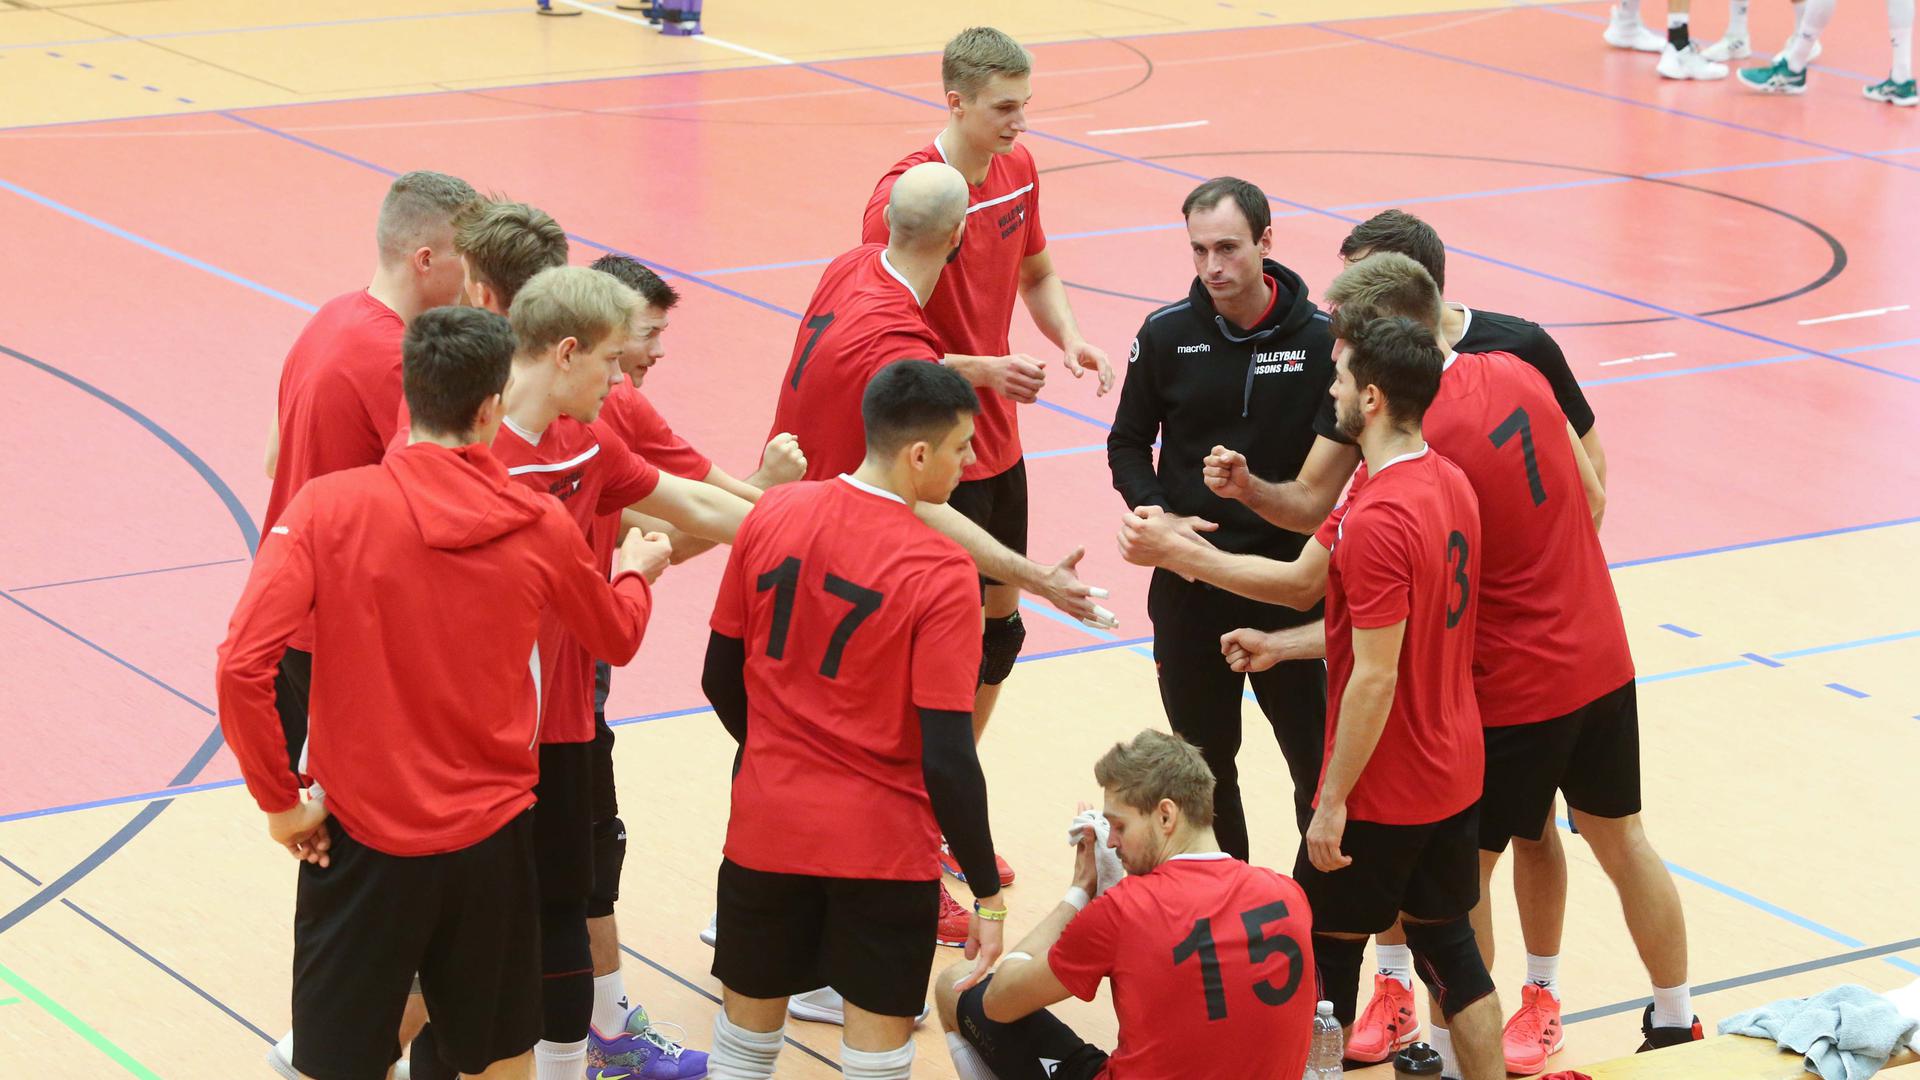 Volleyball-Bundesligist Bisons Bühl während der Vorbereitung auf die Saison 2020/21